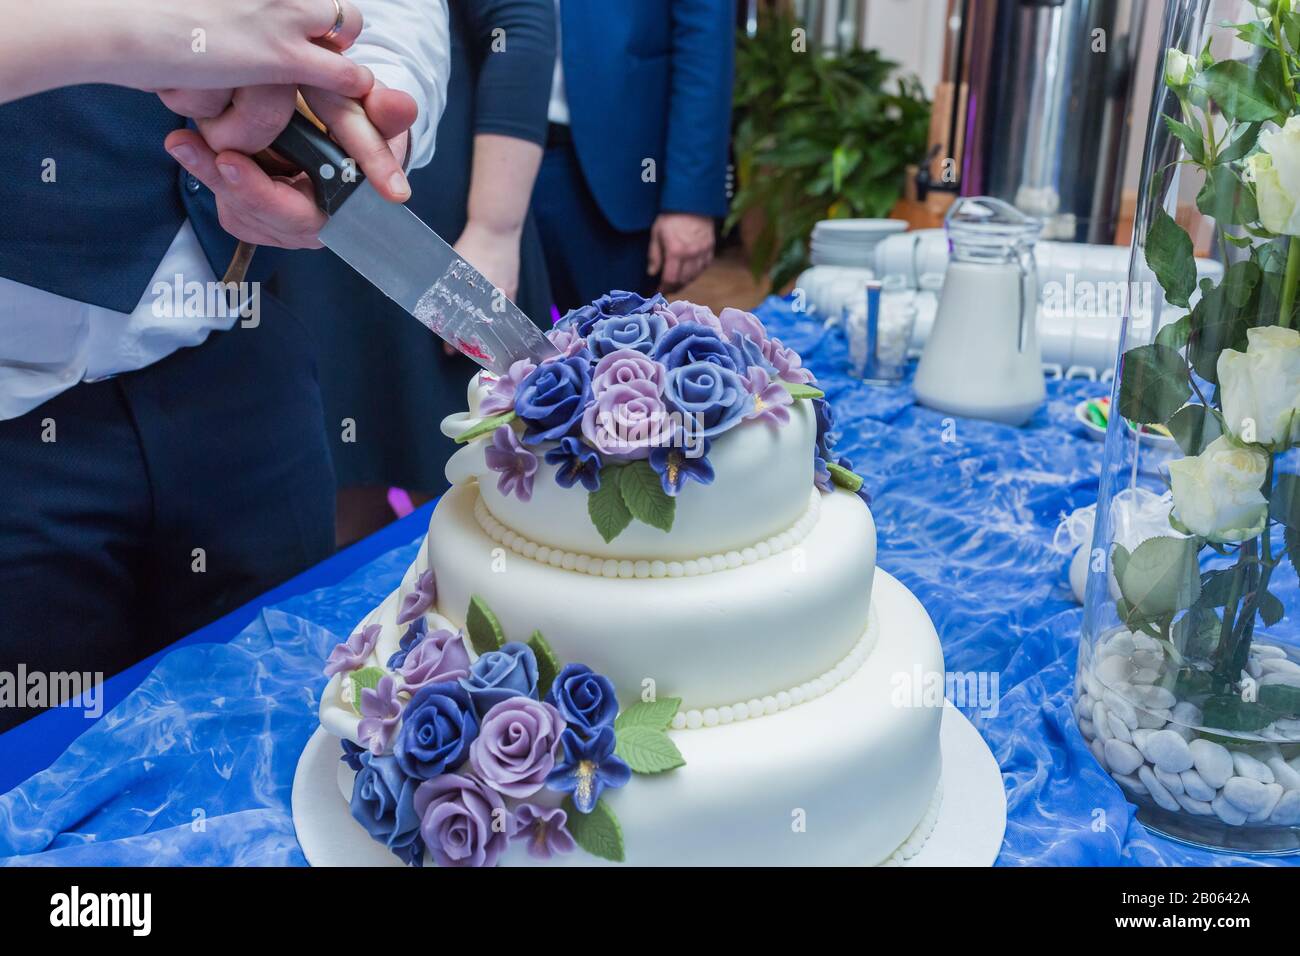 Cesis De La Ville, Lettonie. Massepain gâteau de mariage avec roses.14.02.2020 Banque D'Images